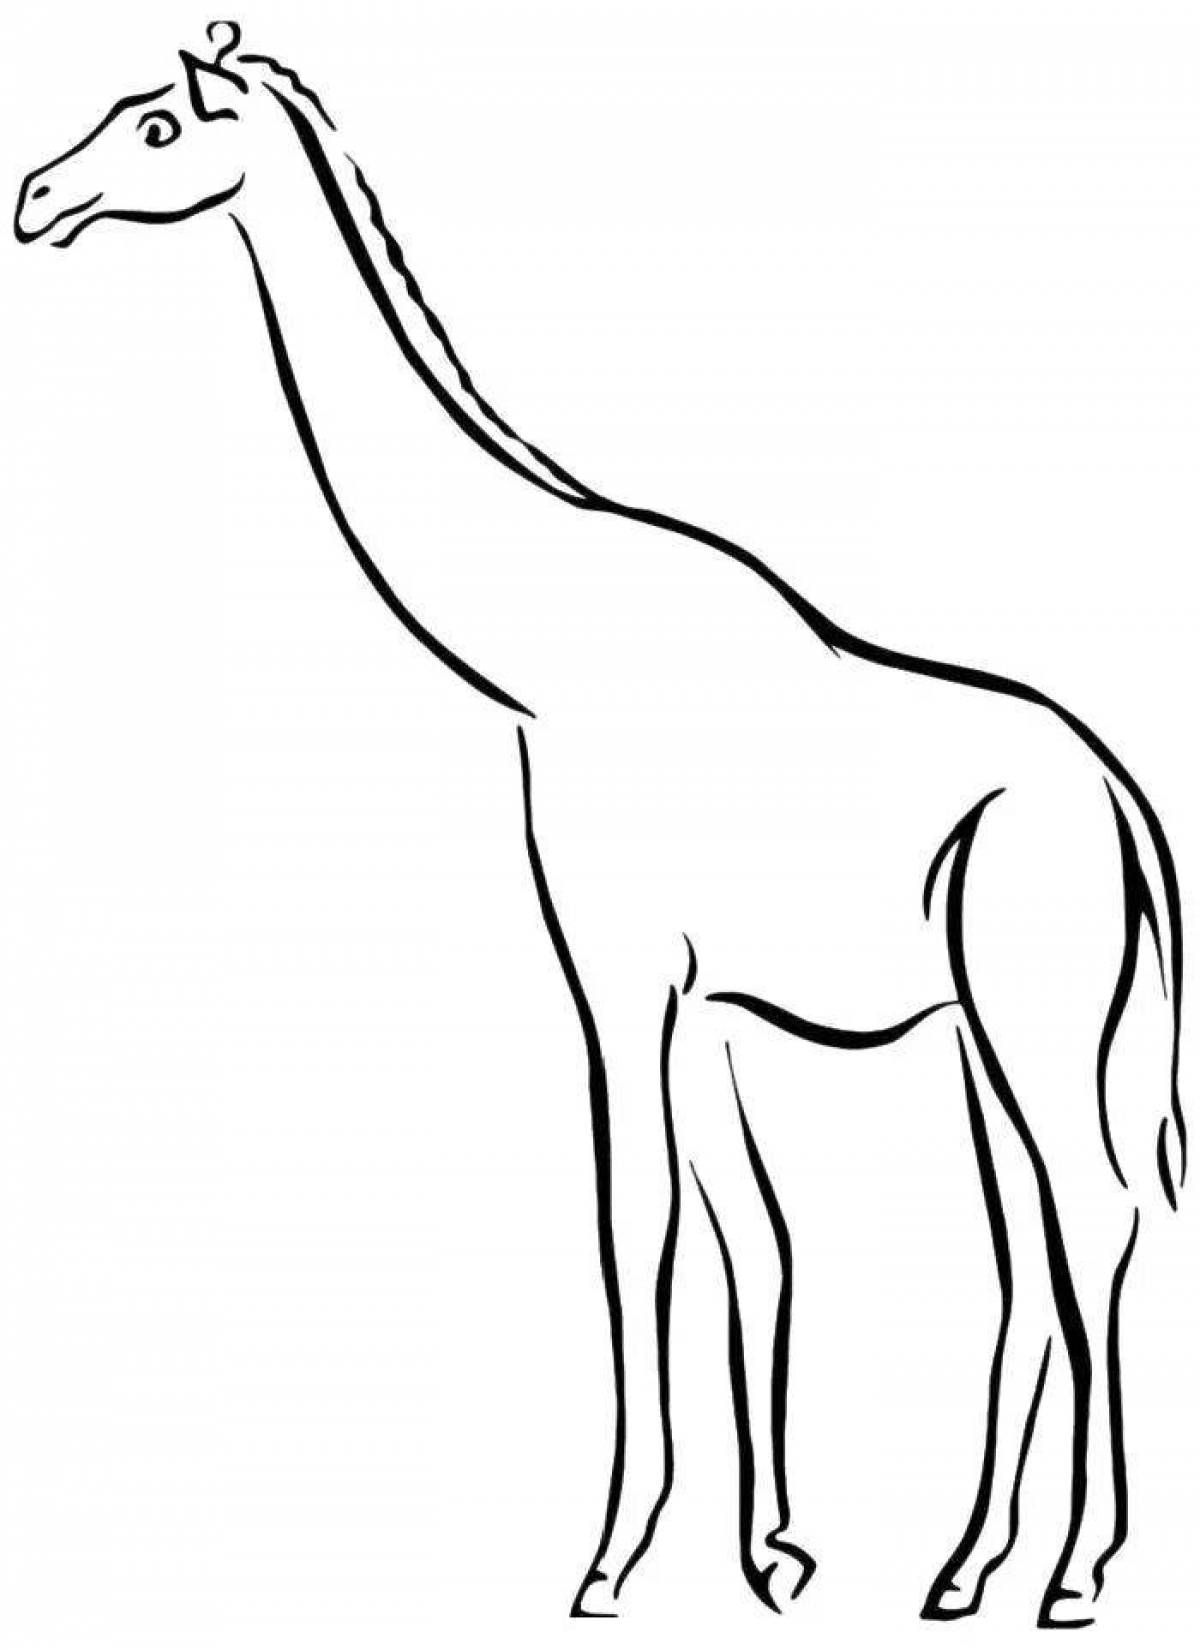 Составная страница раскраски жирафа